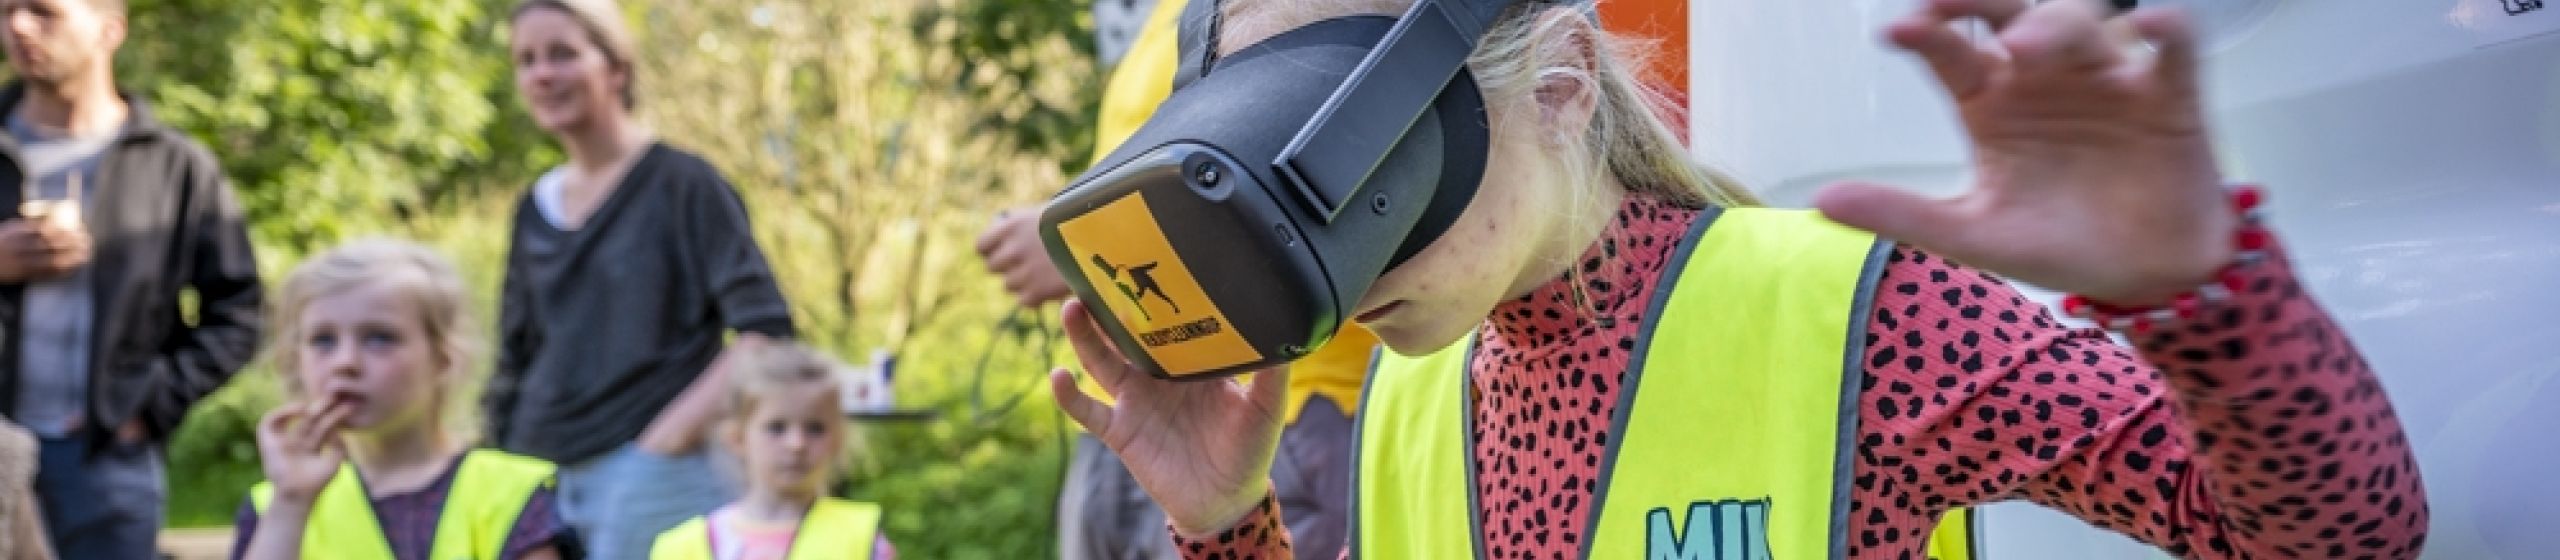 MikMakker met VR-headset op